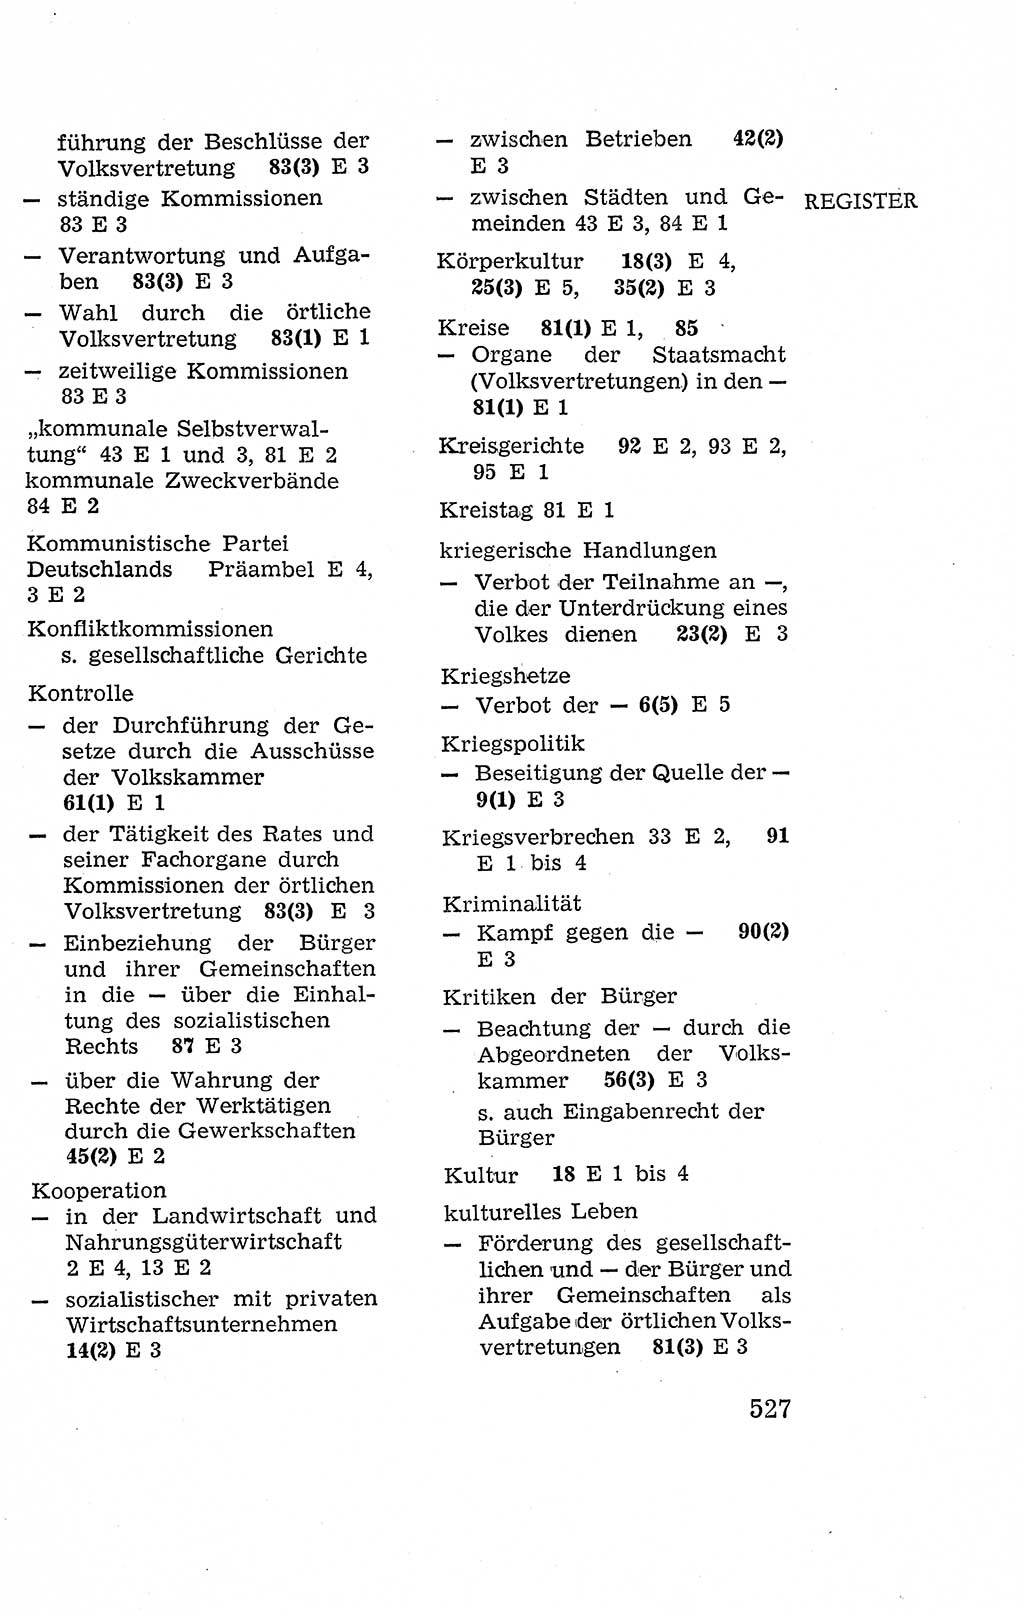 Verfassung der Deutschen Demokratischen Republik (DDR), Dokumente, Kommentar 1969, Band 2, Seite 527 (Verf. DDR Dok. Komm. 1969, Bd. 2, S. 527)